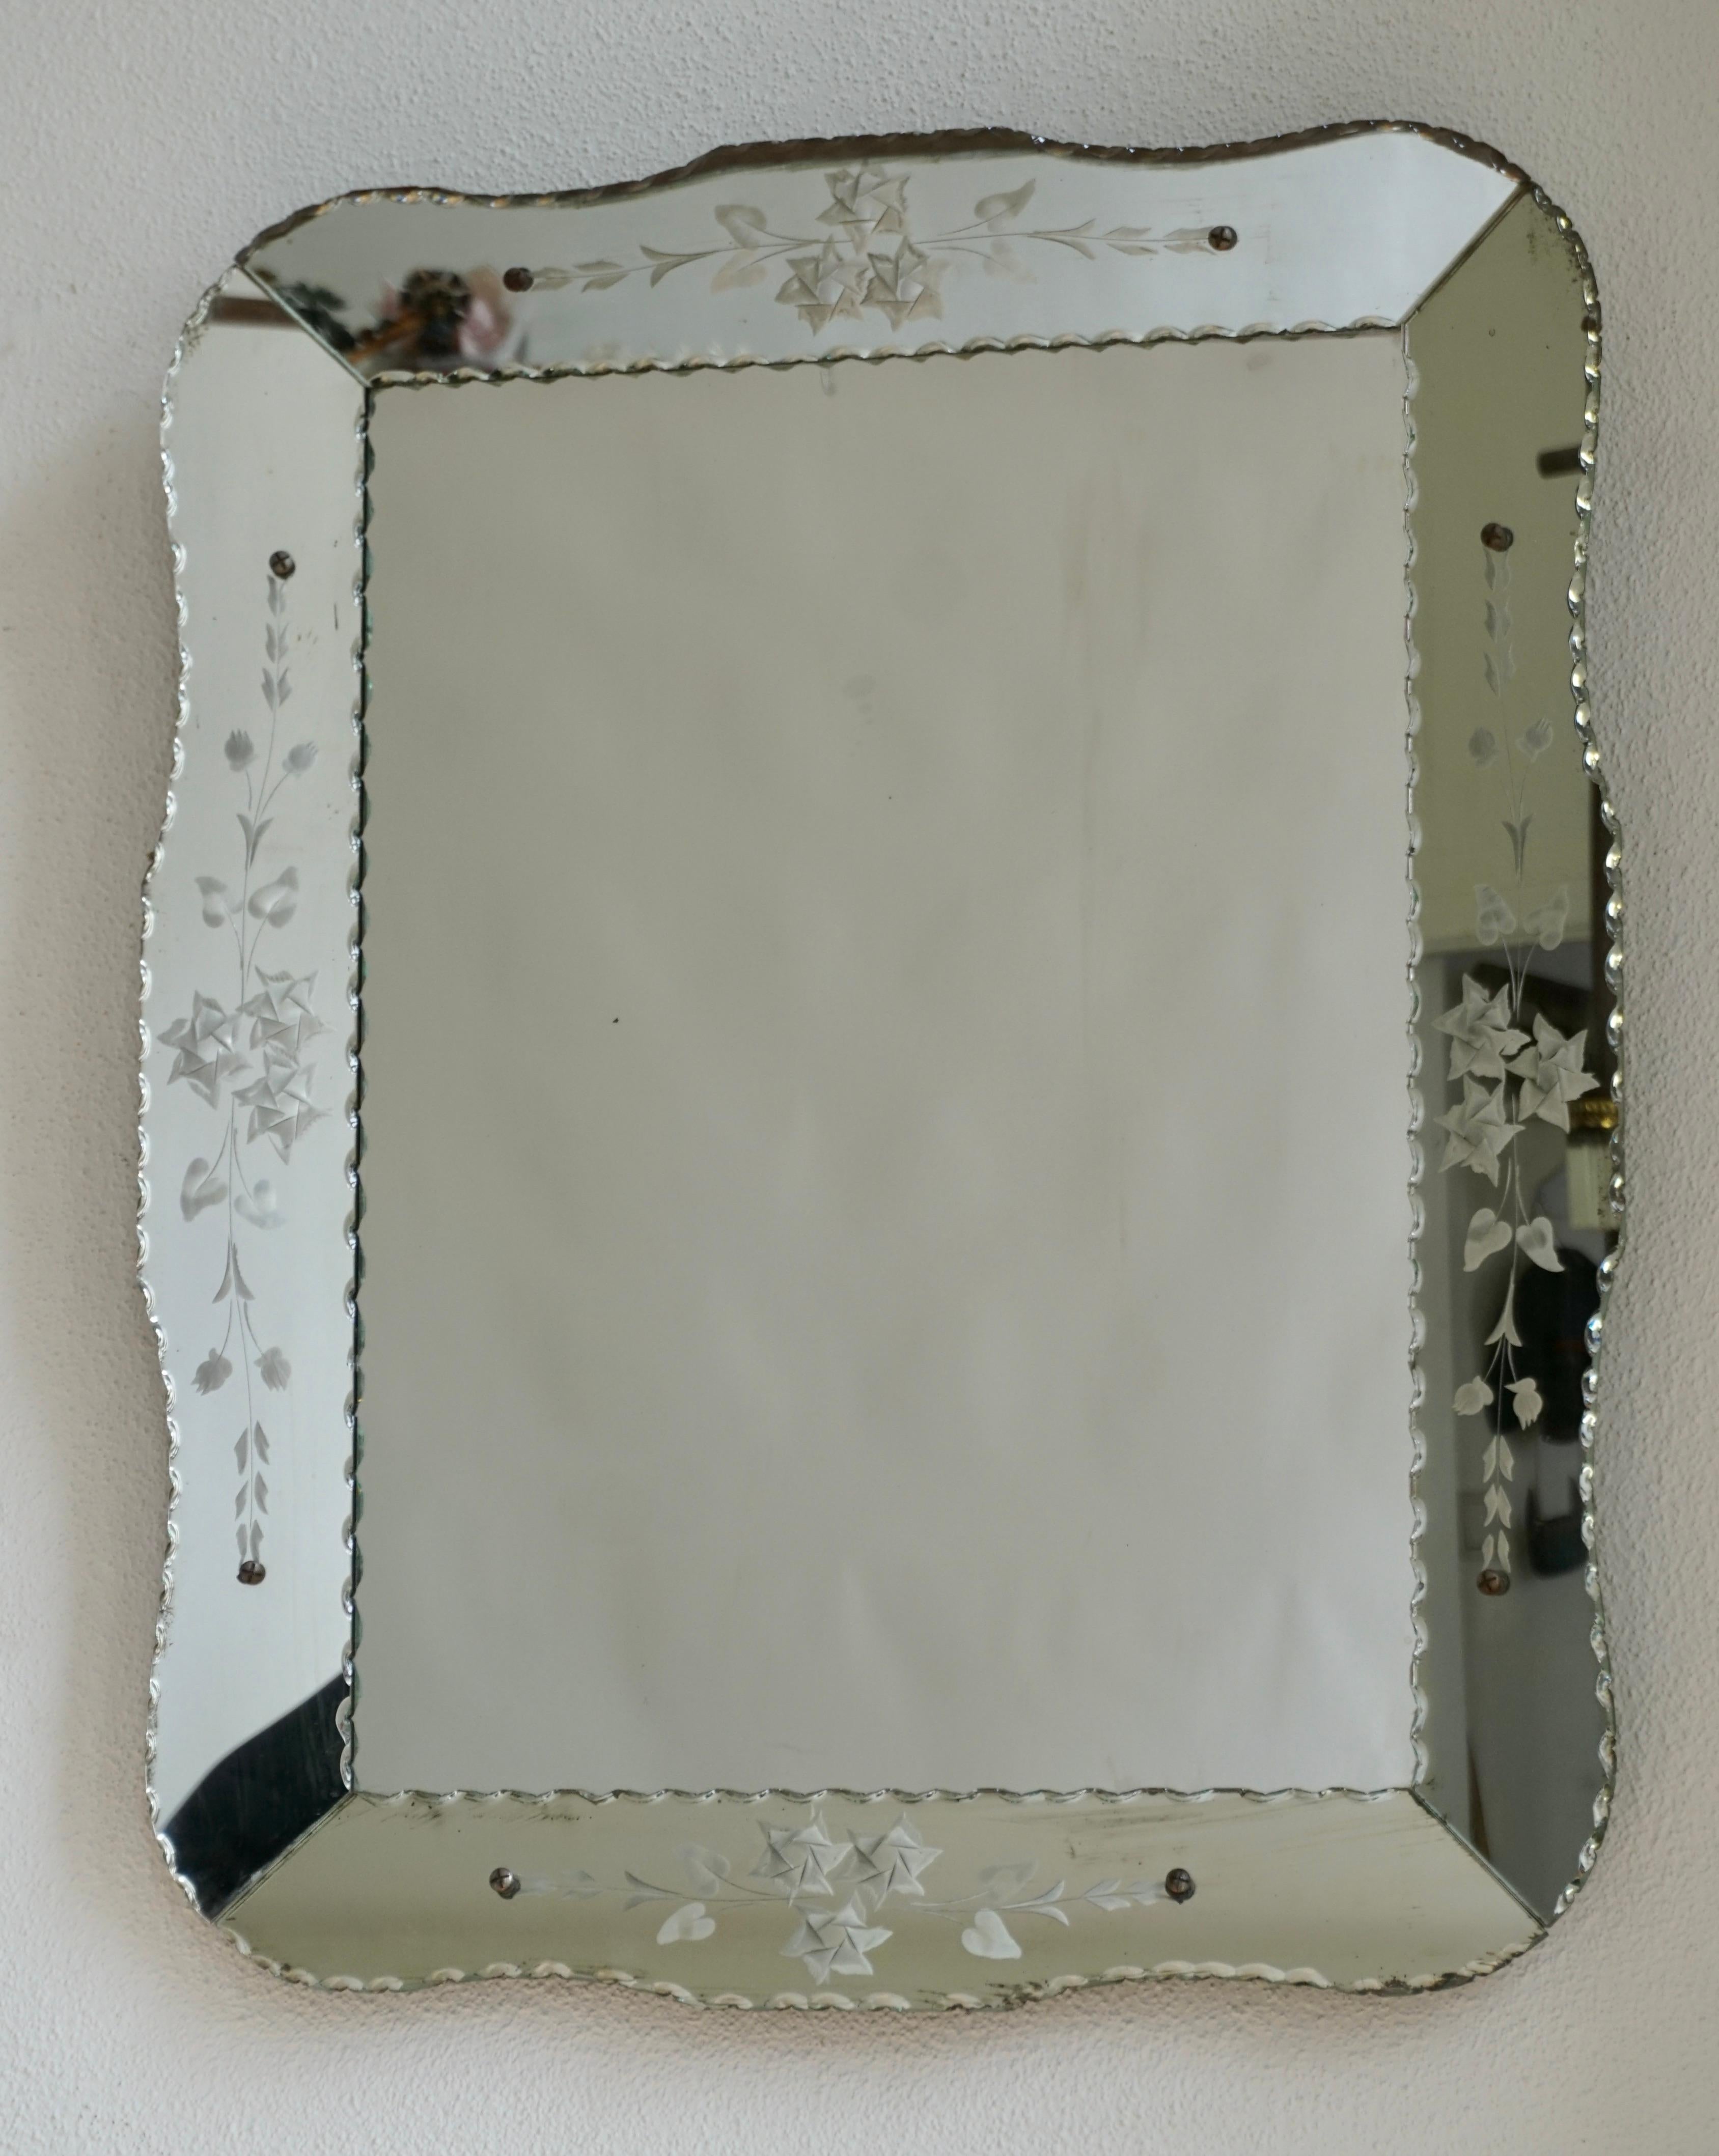 Miroir vénitien vintage gravé et biseauté. 
Ce miroir vénitien de forme inhabituelle a un périmètre biseauté. Miroir parfait pour une salle d'eau ou un dressing.